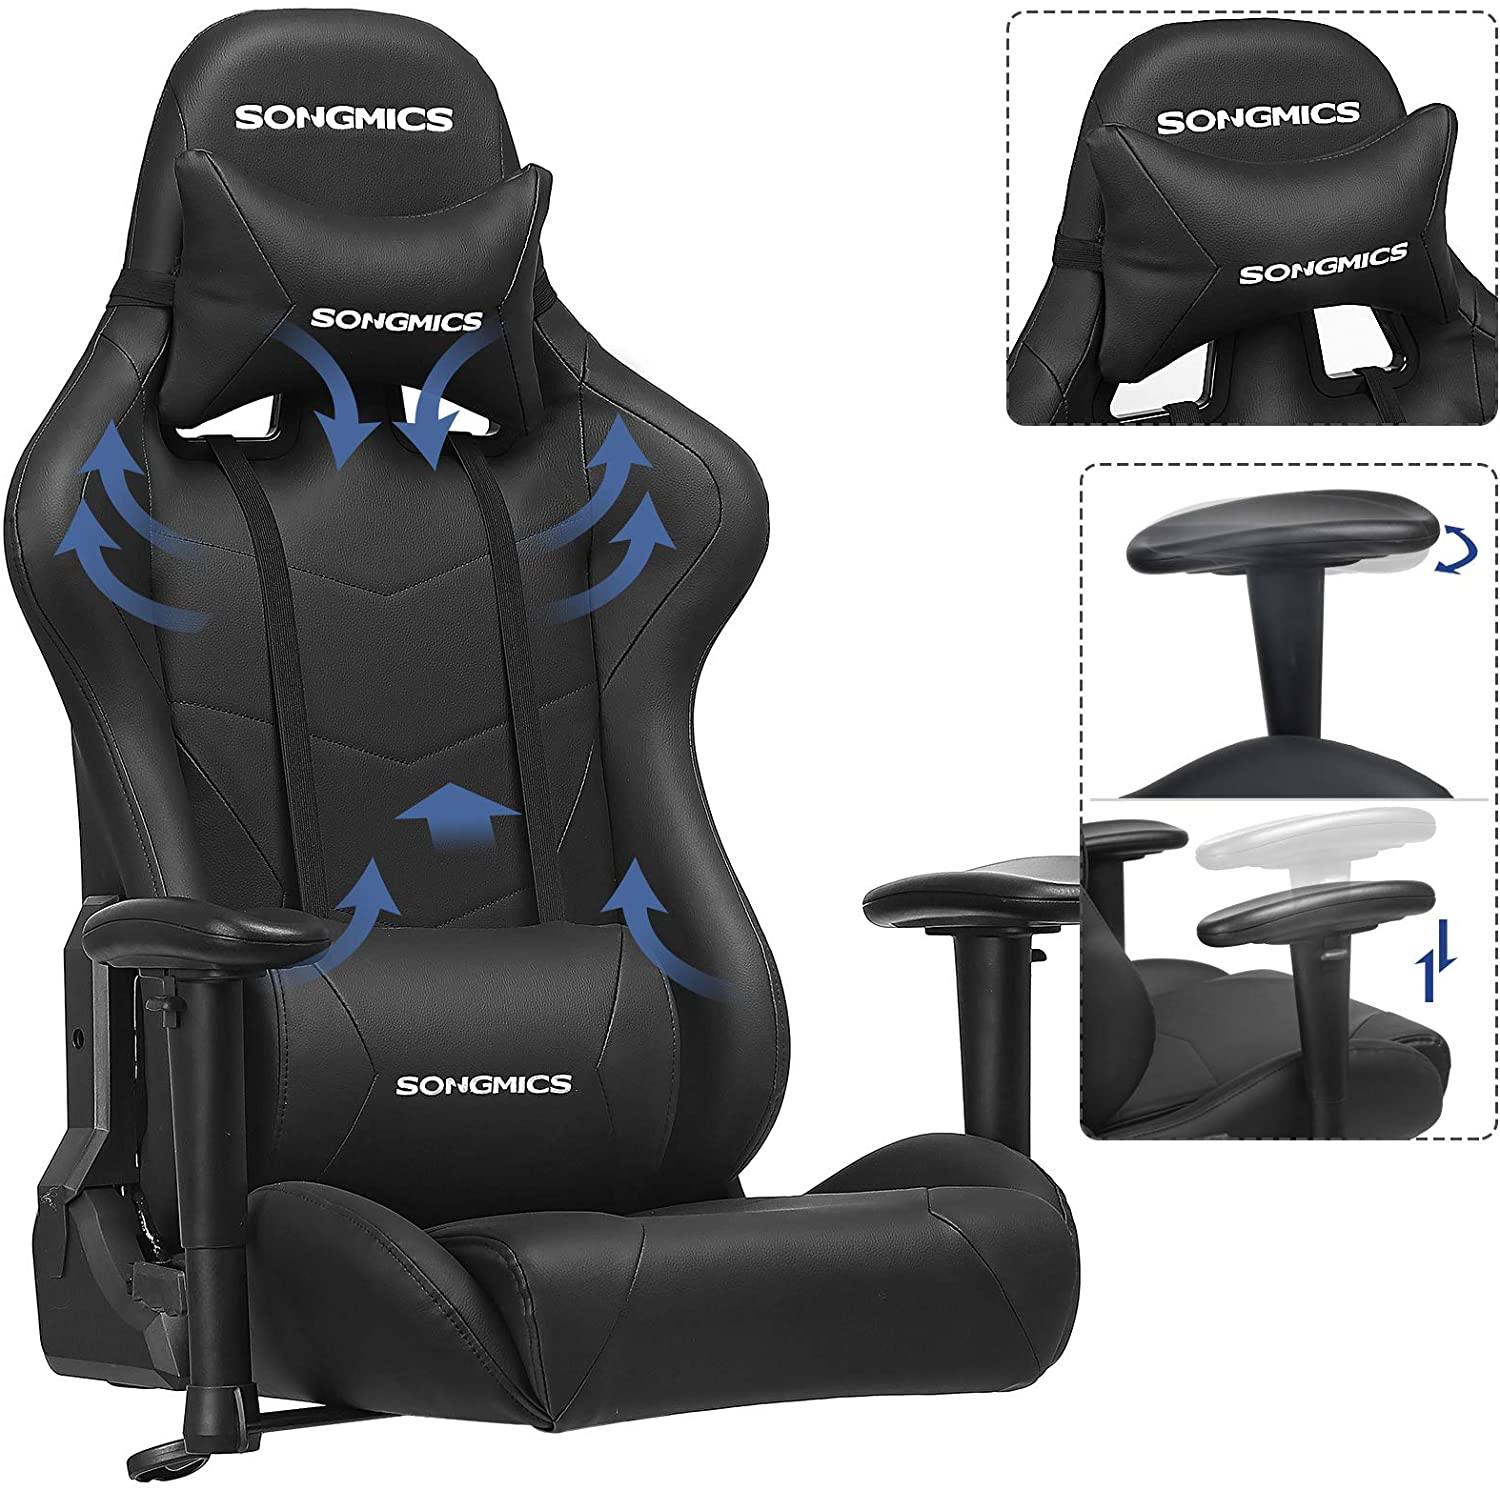 Gaming stol, ergonomisk, lændepude, stålramme, Høj ryg, Stort sæde, Justerbar højde, sort og grå Gaming stol Vasagle 